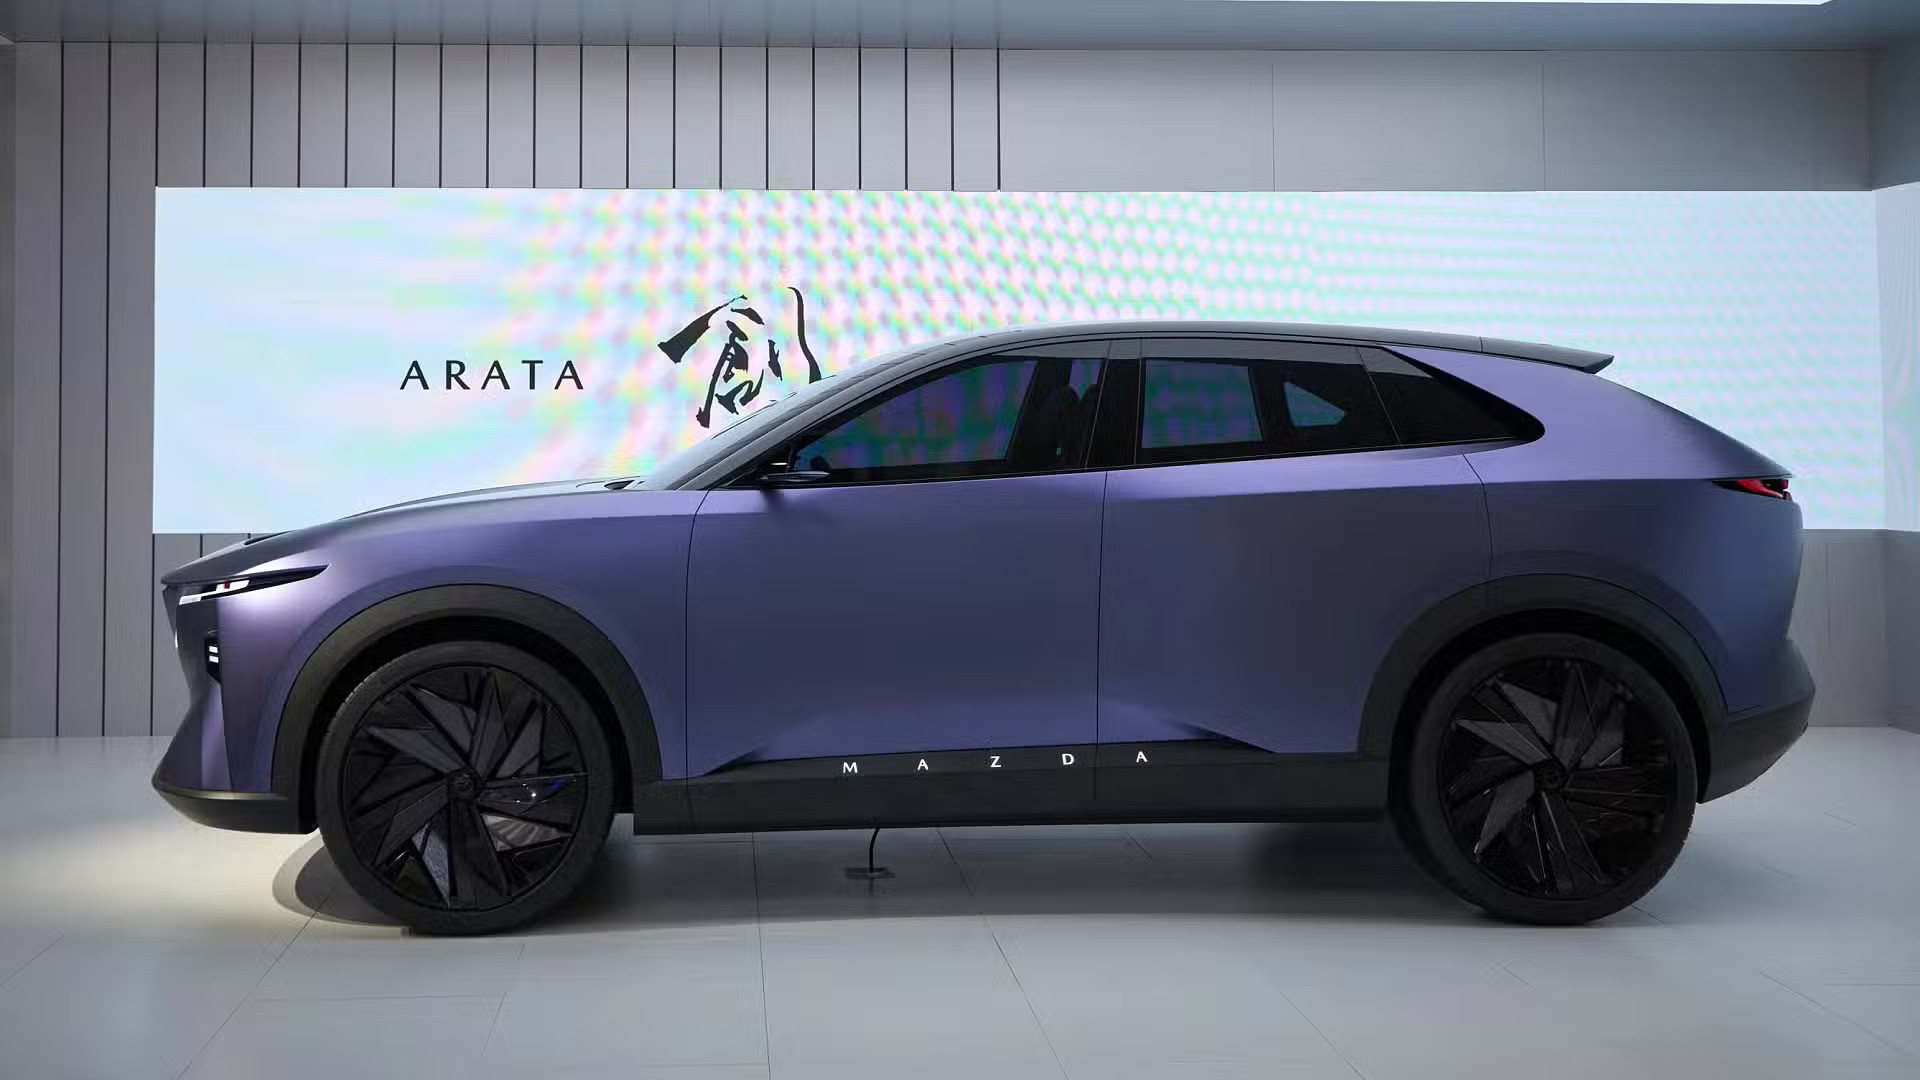 Ra mắt Mazda Arata Concept - SUV thuần điện ngang cỡ Mazda CX-5, chạy hơn 600km/sạc- Ảnh 4.